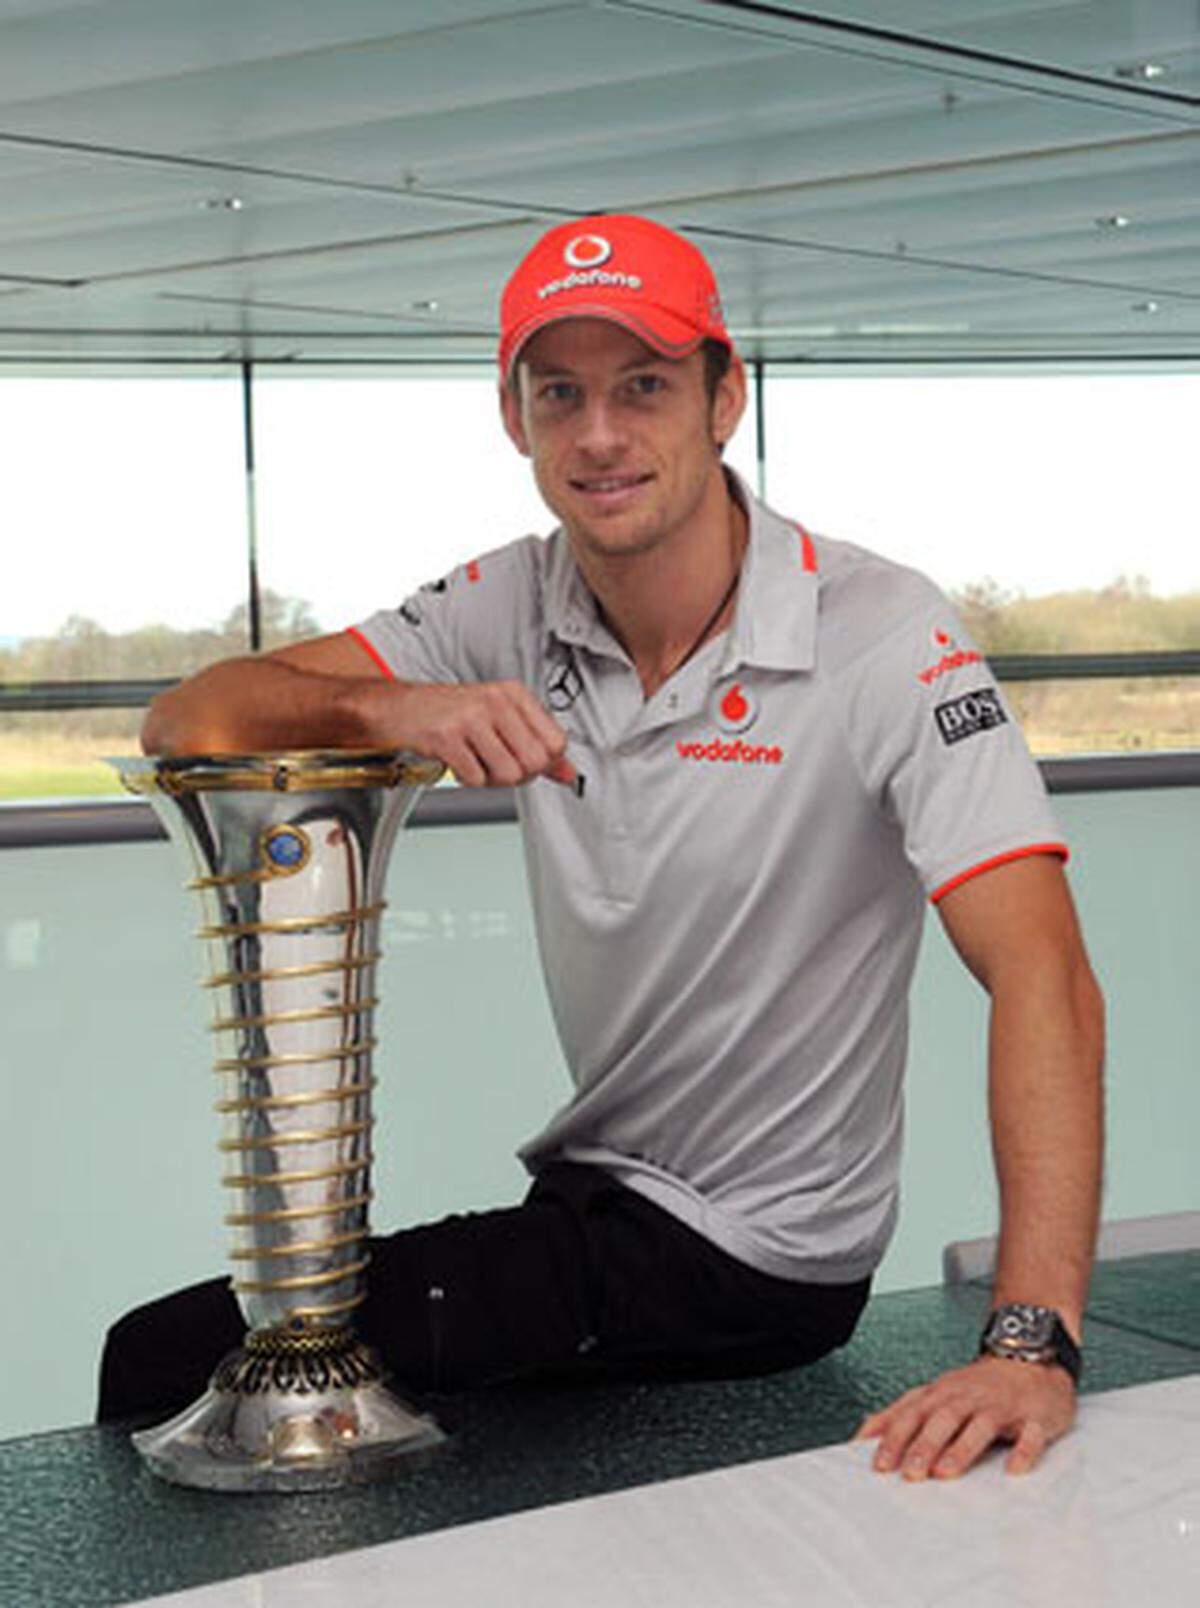 Der regierende Weltmeister konnte sich beim neuen Mercedes-Werksteam, dem Nachfolger seines bisherigen Rennstalls BrawnGP, nicht mit seinen Gehaltswünschen durchsetzen. 2010 startet Button daher für McLaren. Dort wird der Champion kolportierte 20 Millionen Euro in den nächsten drei Jahren verdienen.